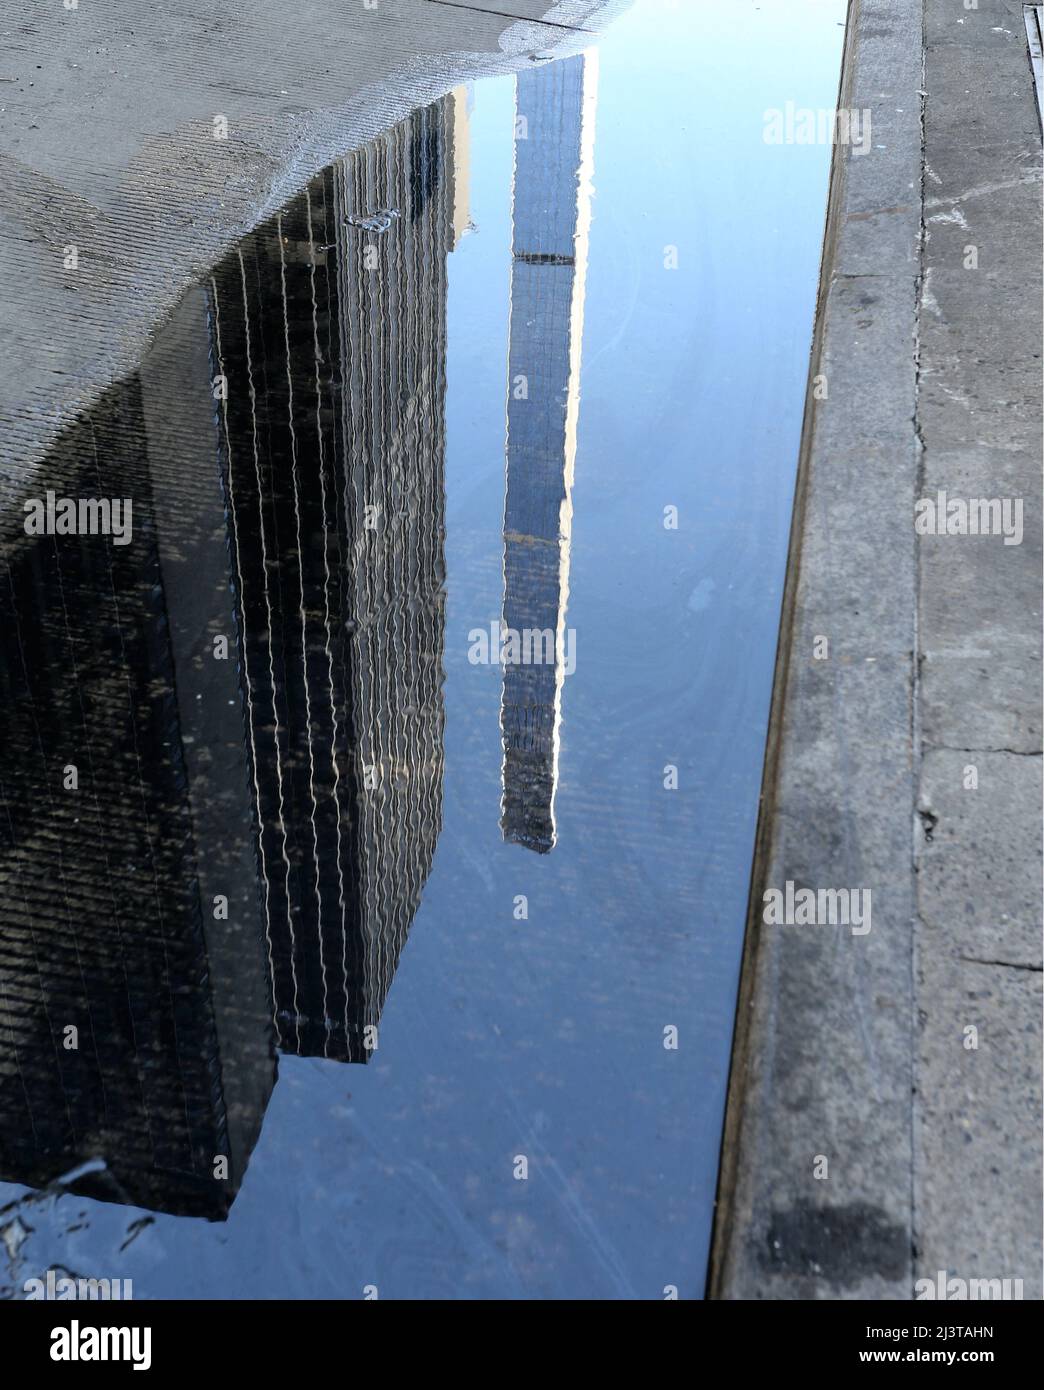 El rascacielos más skinniest del mundo La Torre Steinway está lista para sus primeros residentes en la Ciudad de Nueva York, NY, EE.UU. El 9 de abril de 2022. Steinway Tower, o 111 West 57th Street, tiene una relación altura-anchura de 24:1, lo que la convierte en 'el rascacielos más delgado del mundo', según los desarrolladores. A 1.428 pies, es también uno de los edificios más altos del hemisferio occidental, quedando corto de otros dos en la ciudad de Nueva York: Un World Trade Center a 1.776 pies y Central Park Tower a 1.550 pies. La urbanización Midtown Manhattan incluye 60 apartamentos de 84 pisos que abarcan la torre y los adyacentes Foto de stock